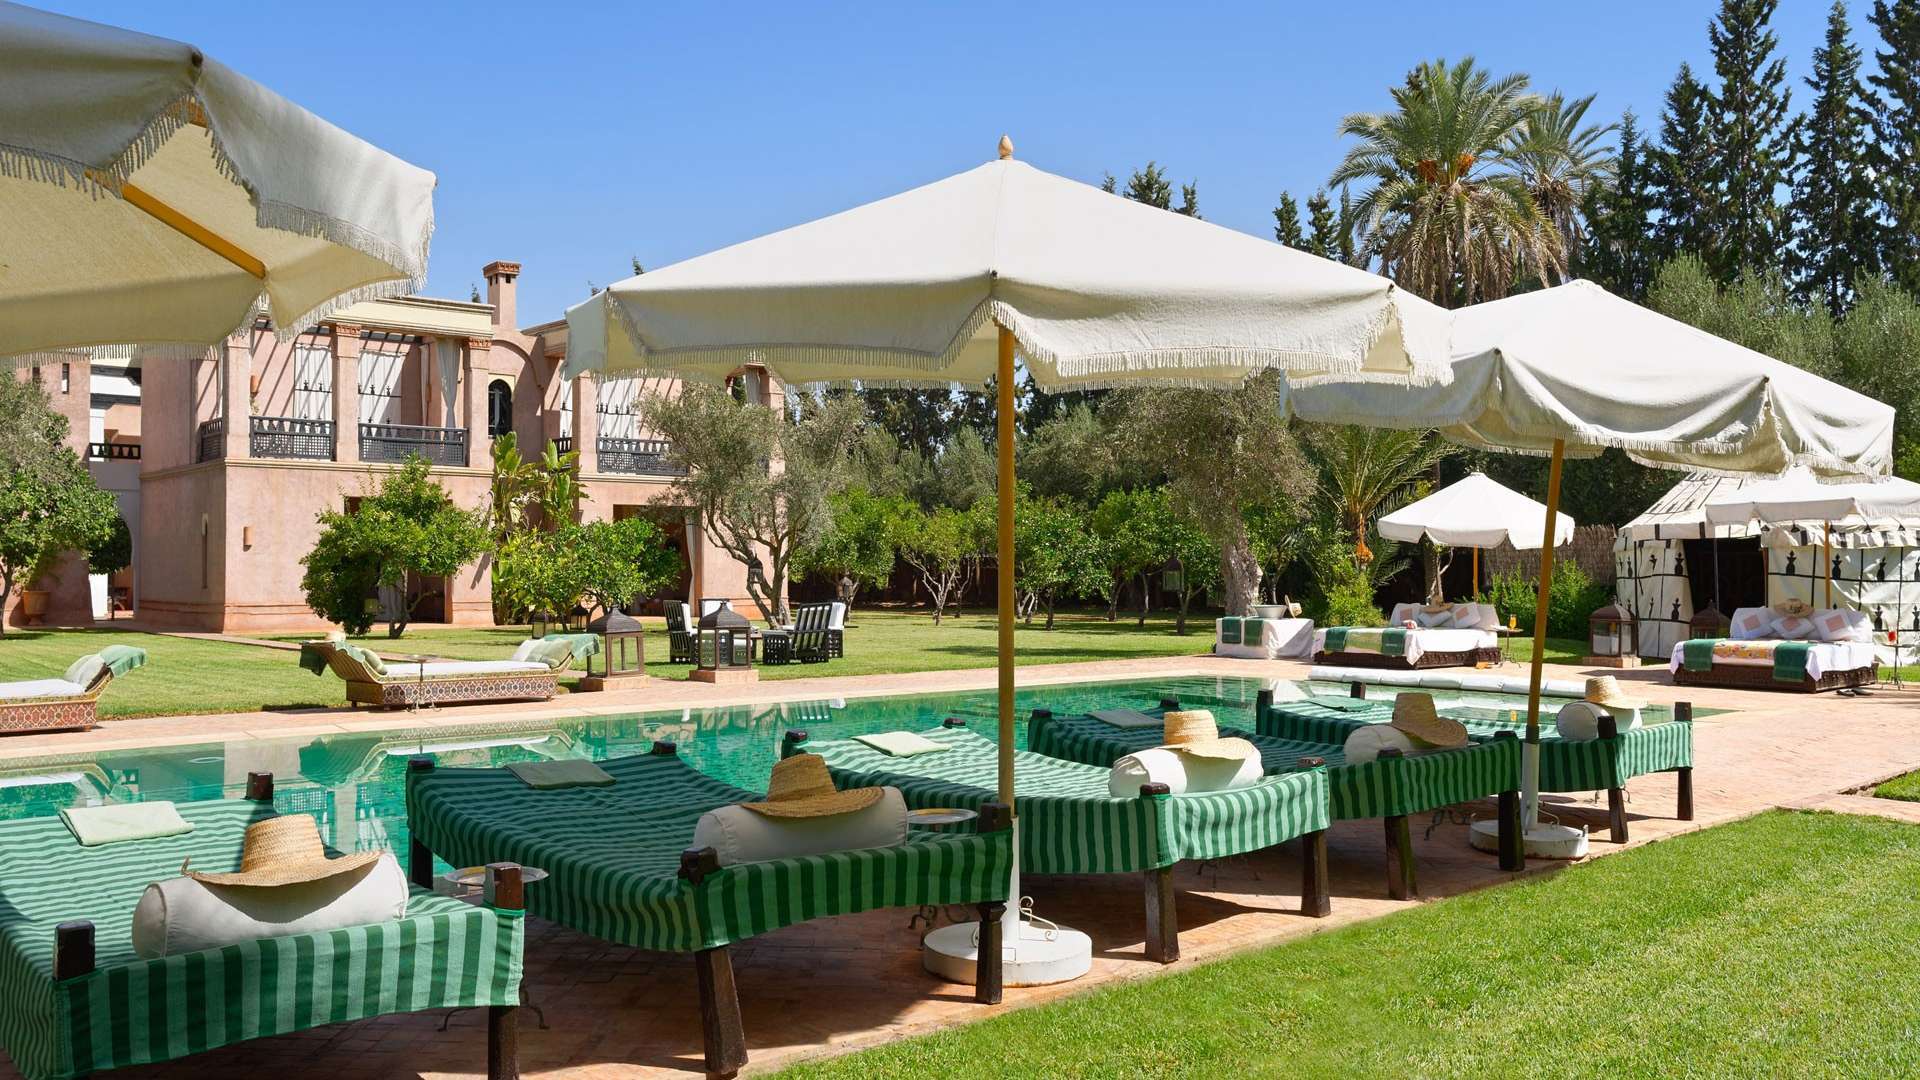 Location de vacances,Villa,Propriété privée de luxe avec 7 suites d’exception, services hôteliers, tennis, spa,…,Marrakech,Palmeraie